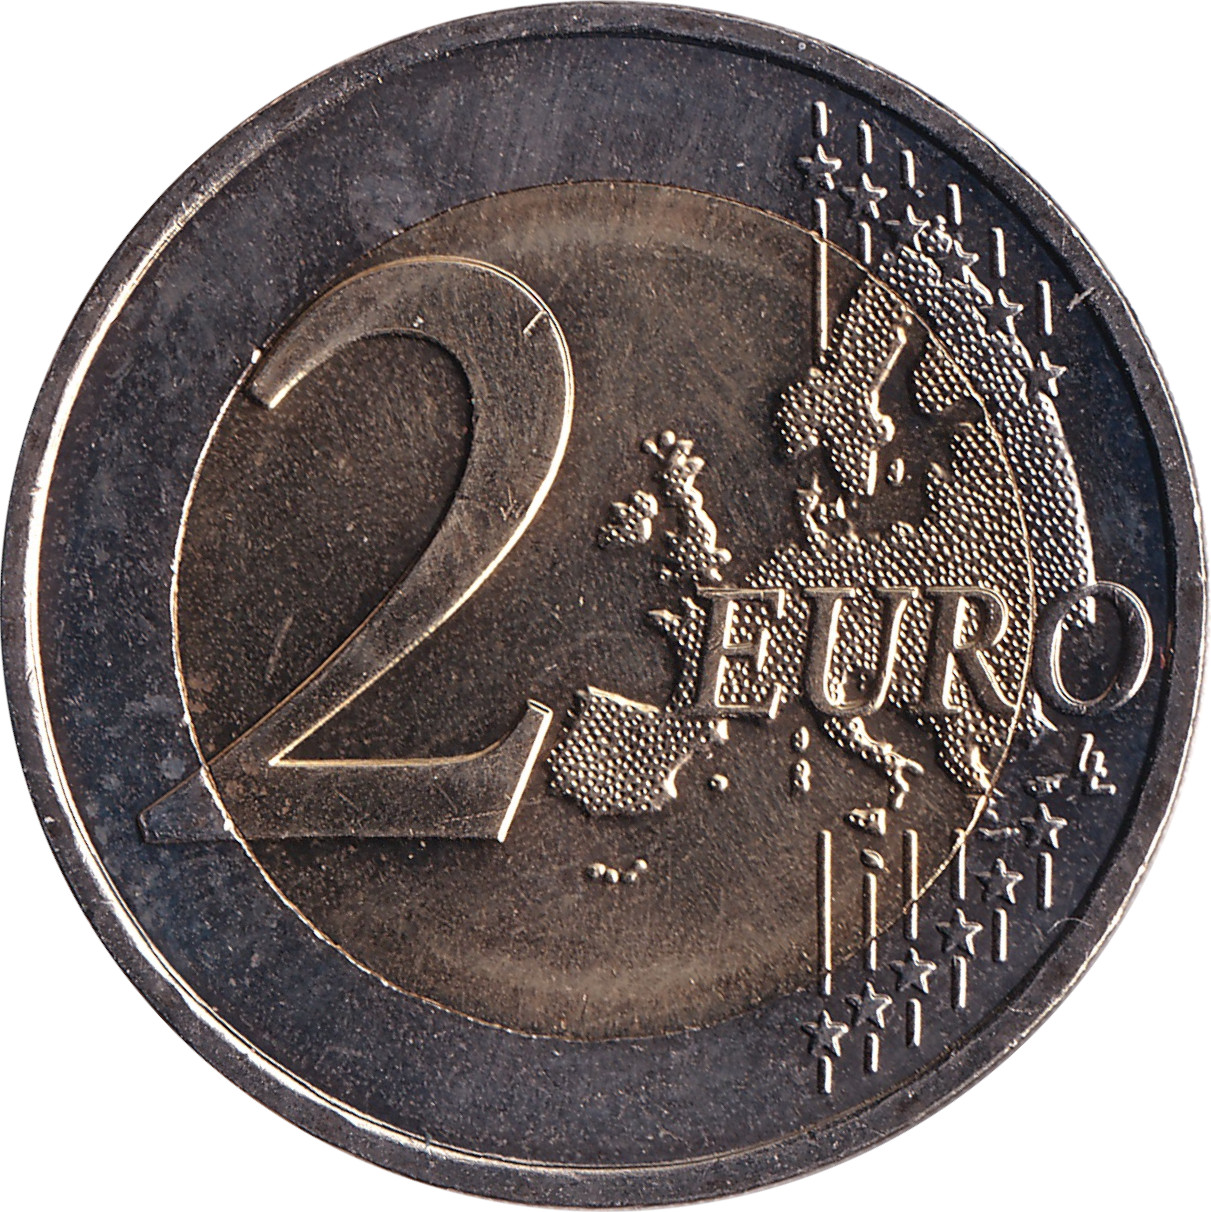 2 euro - Fête de la Fédération - 225 years